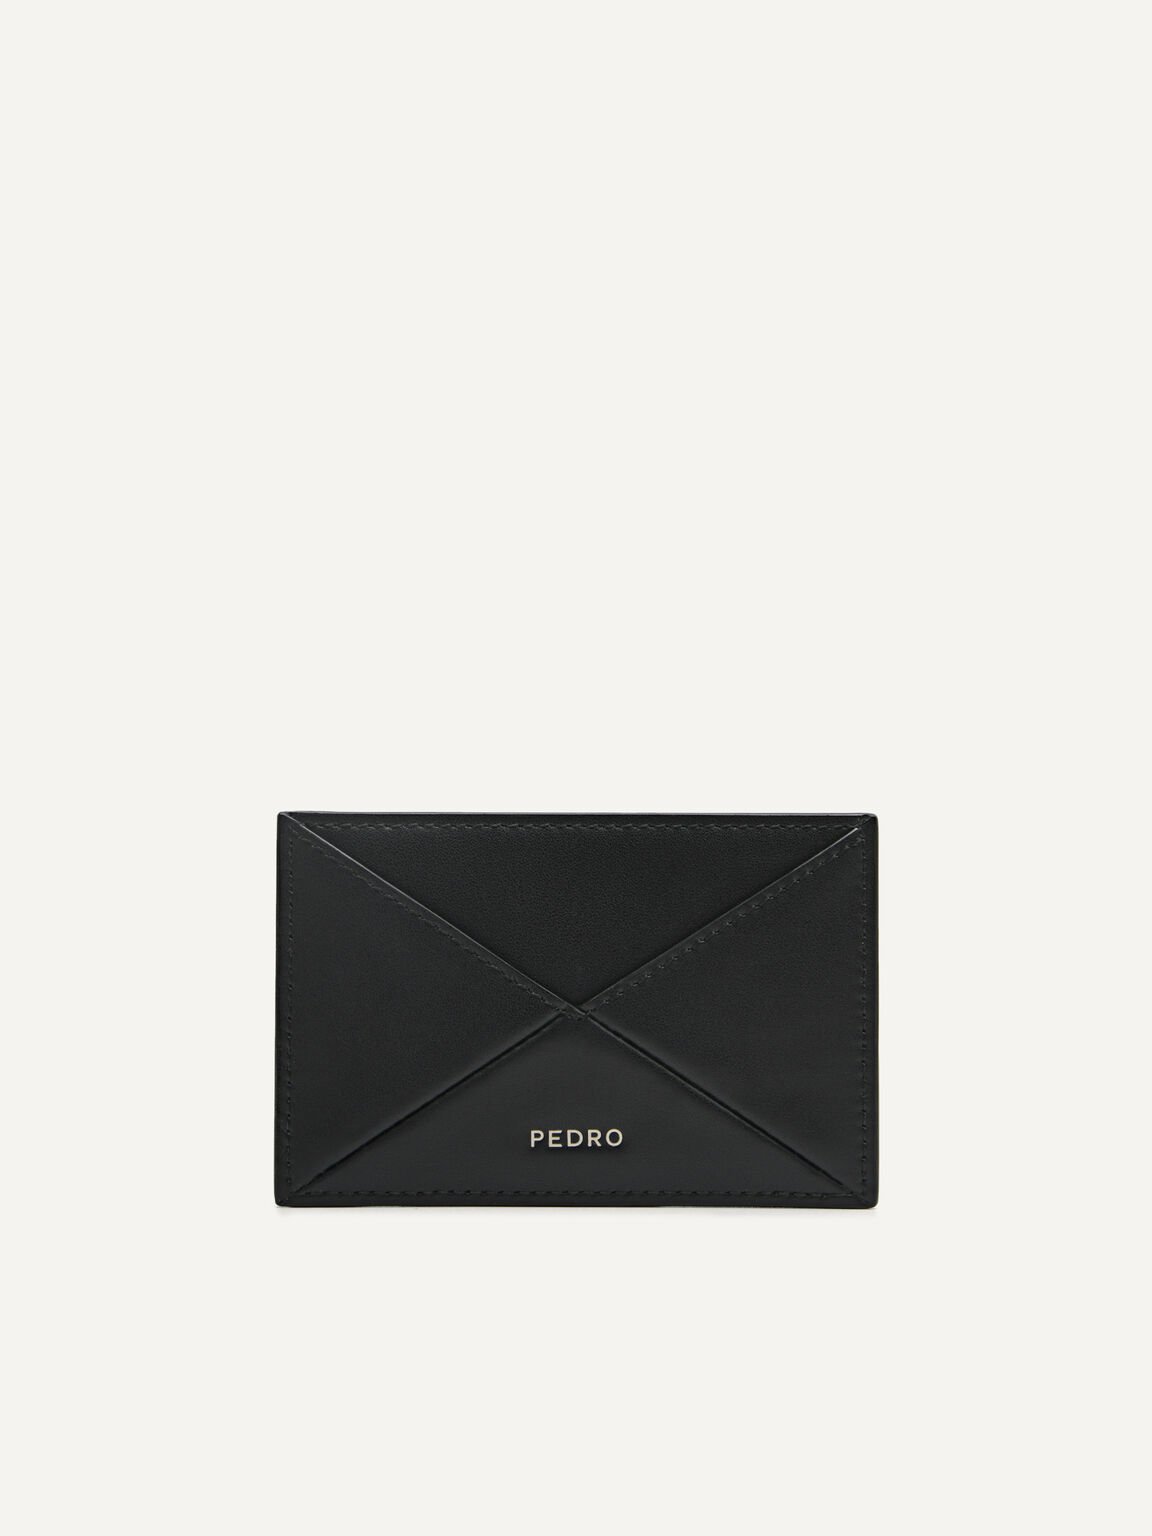 PEDRO工作室皮革卡包, 黑色